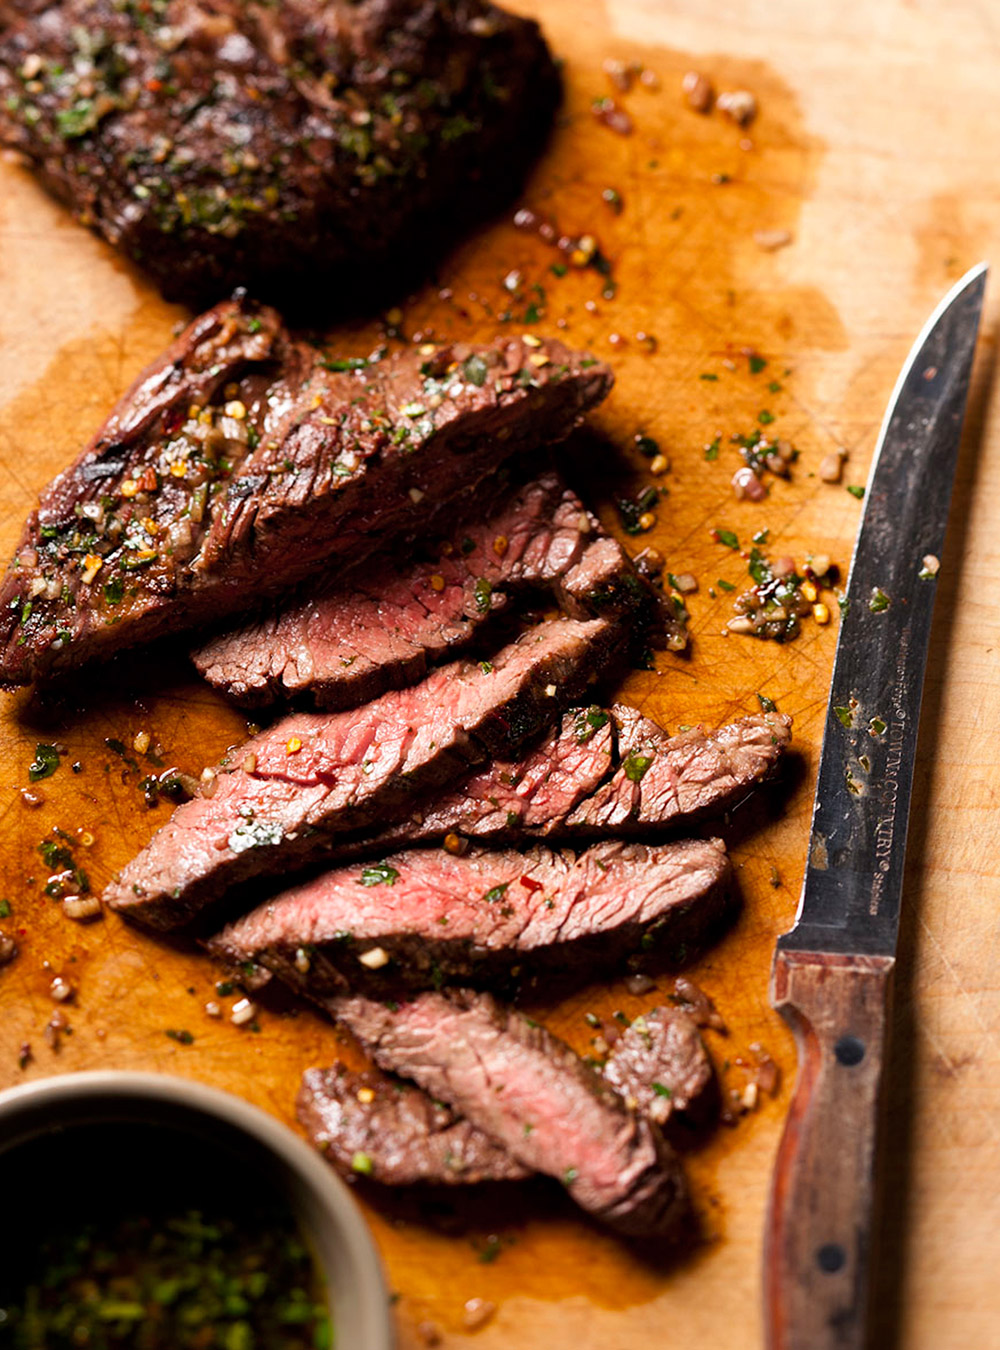 Recette de boeuf: tout sur les rôtis ou les steaks de boeuf  page 2 ...